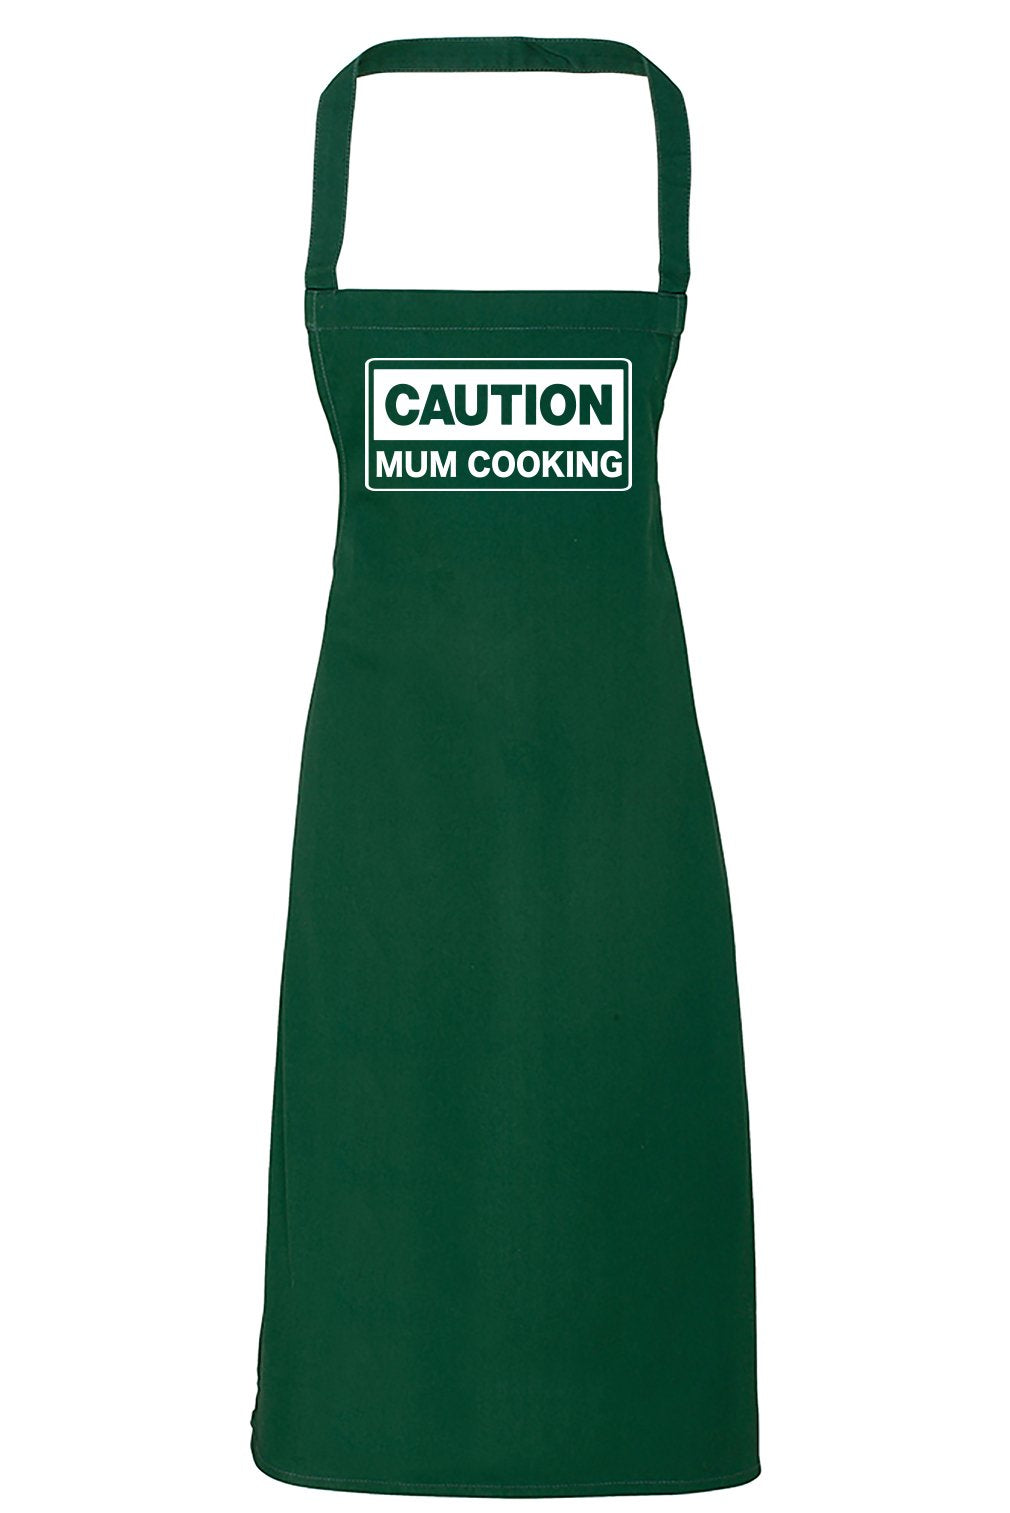 Caution Mum Cooking - Adult Apron - Mum Apron